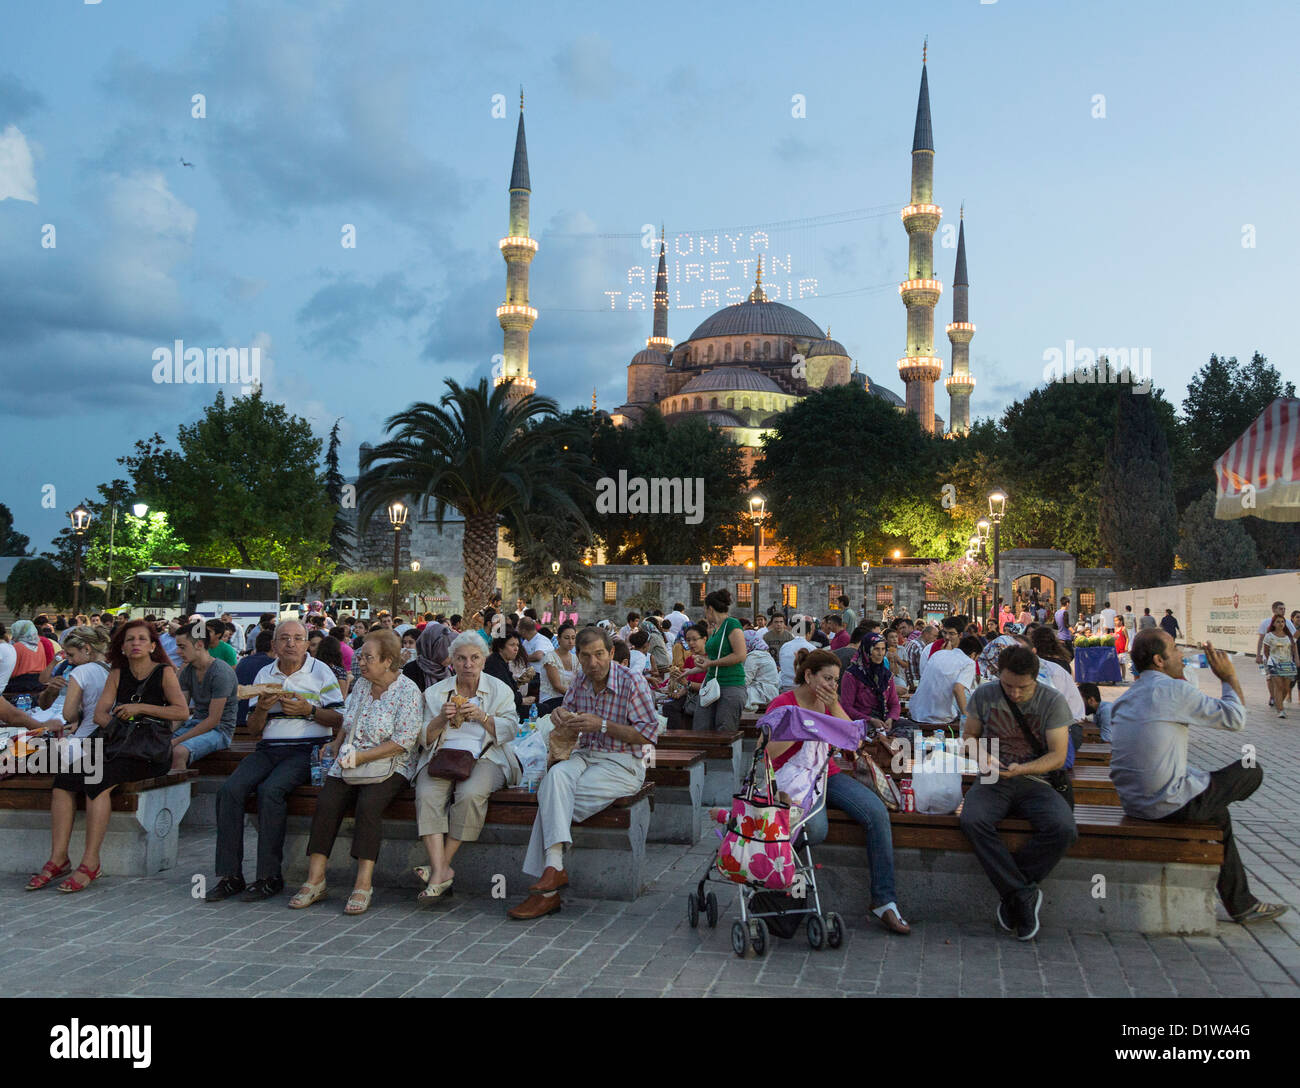 Les musulmans pendant le Ramadan un pique-nique au parc, au district de Sultan Ahmet, Istanbul, Turquie Banque D'Images